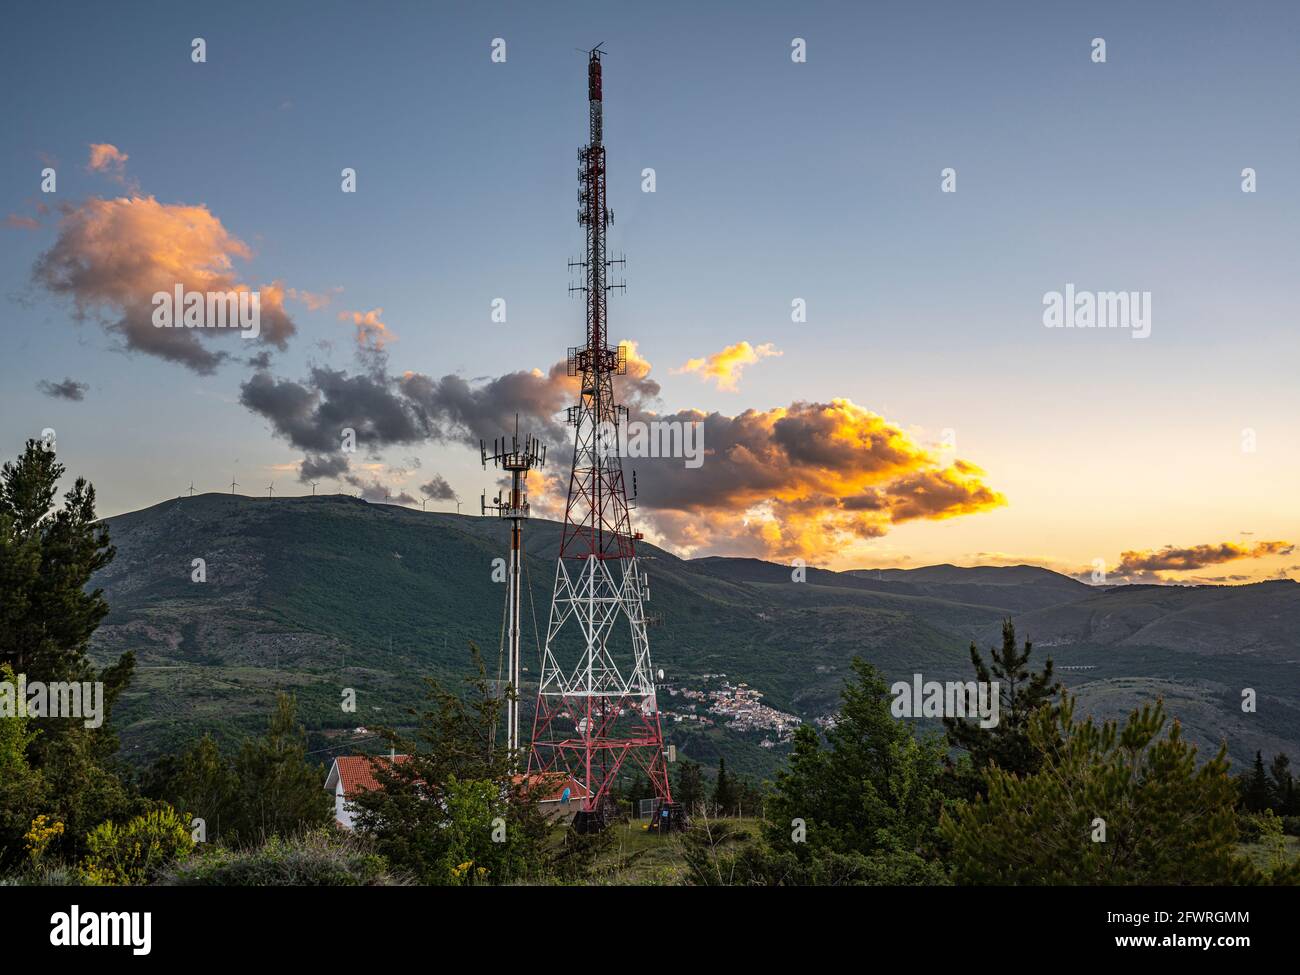 Paysage de montagne avec une grande antenne de communication avec des nuages illuminés par un coucher de soleil orange. Abruzzes, Italie, Europe Banque D'Images